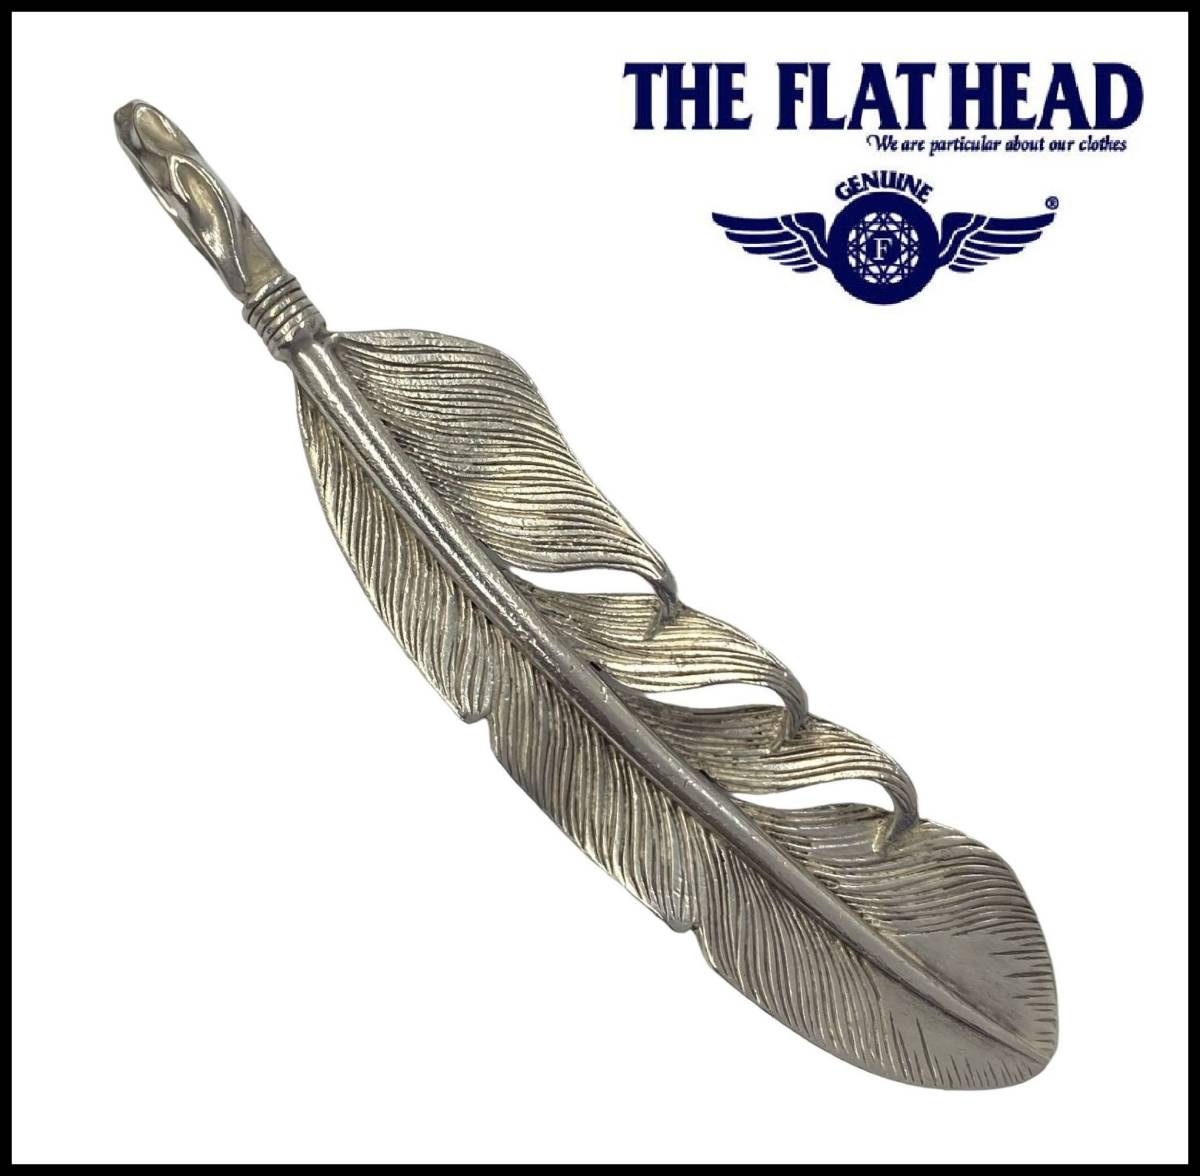 人気メーカー・ブランド 925 シルバー スターリング フラットヘッド HEAD FLAT THE 全銀 RJB インゴット ネックレス チャーム ペンダントトップ フェザー プレーン ペンダントトップ、チャーム